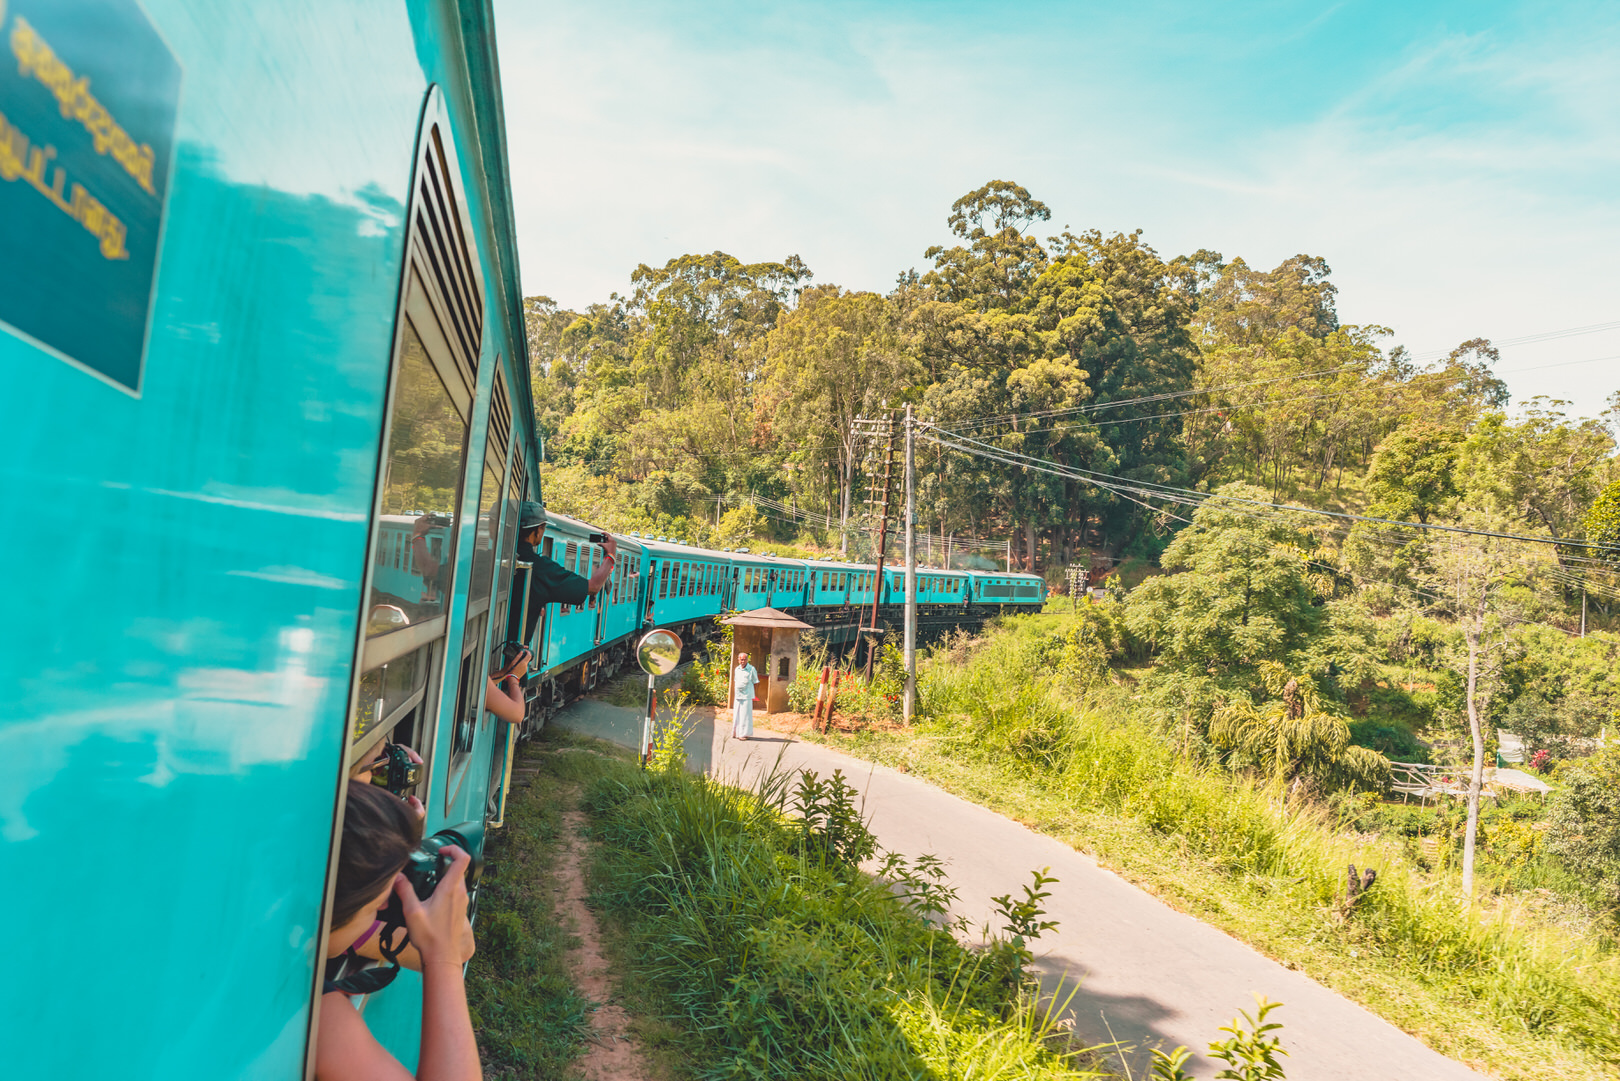 Dein Sri Lanka Urlaub - alle wichtigen Tipps für deine Reise